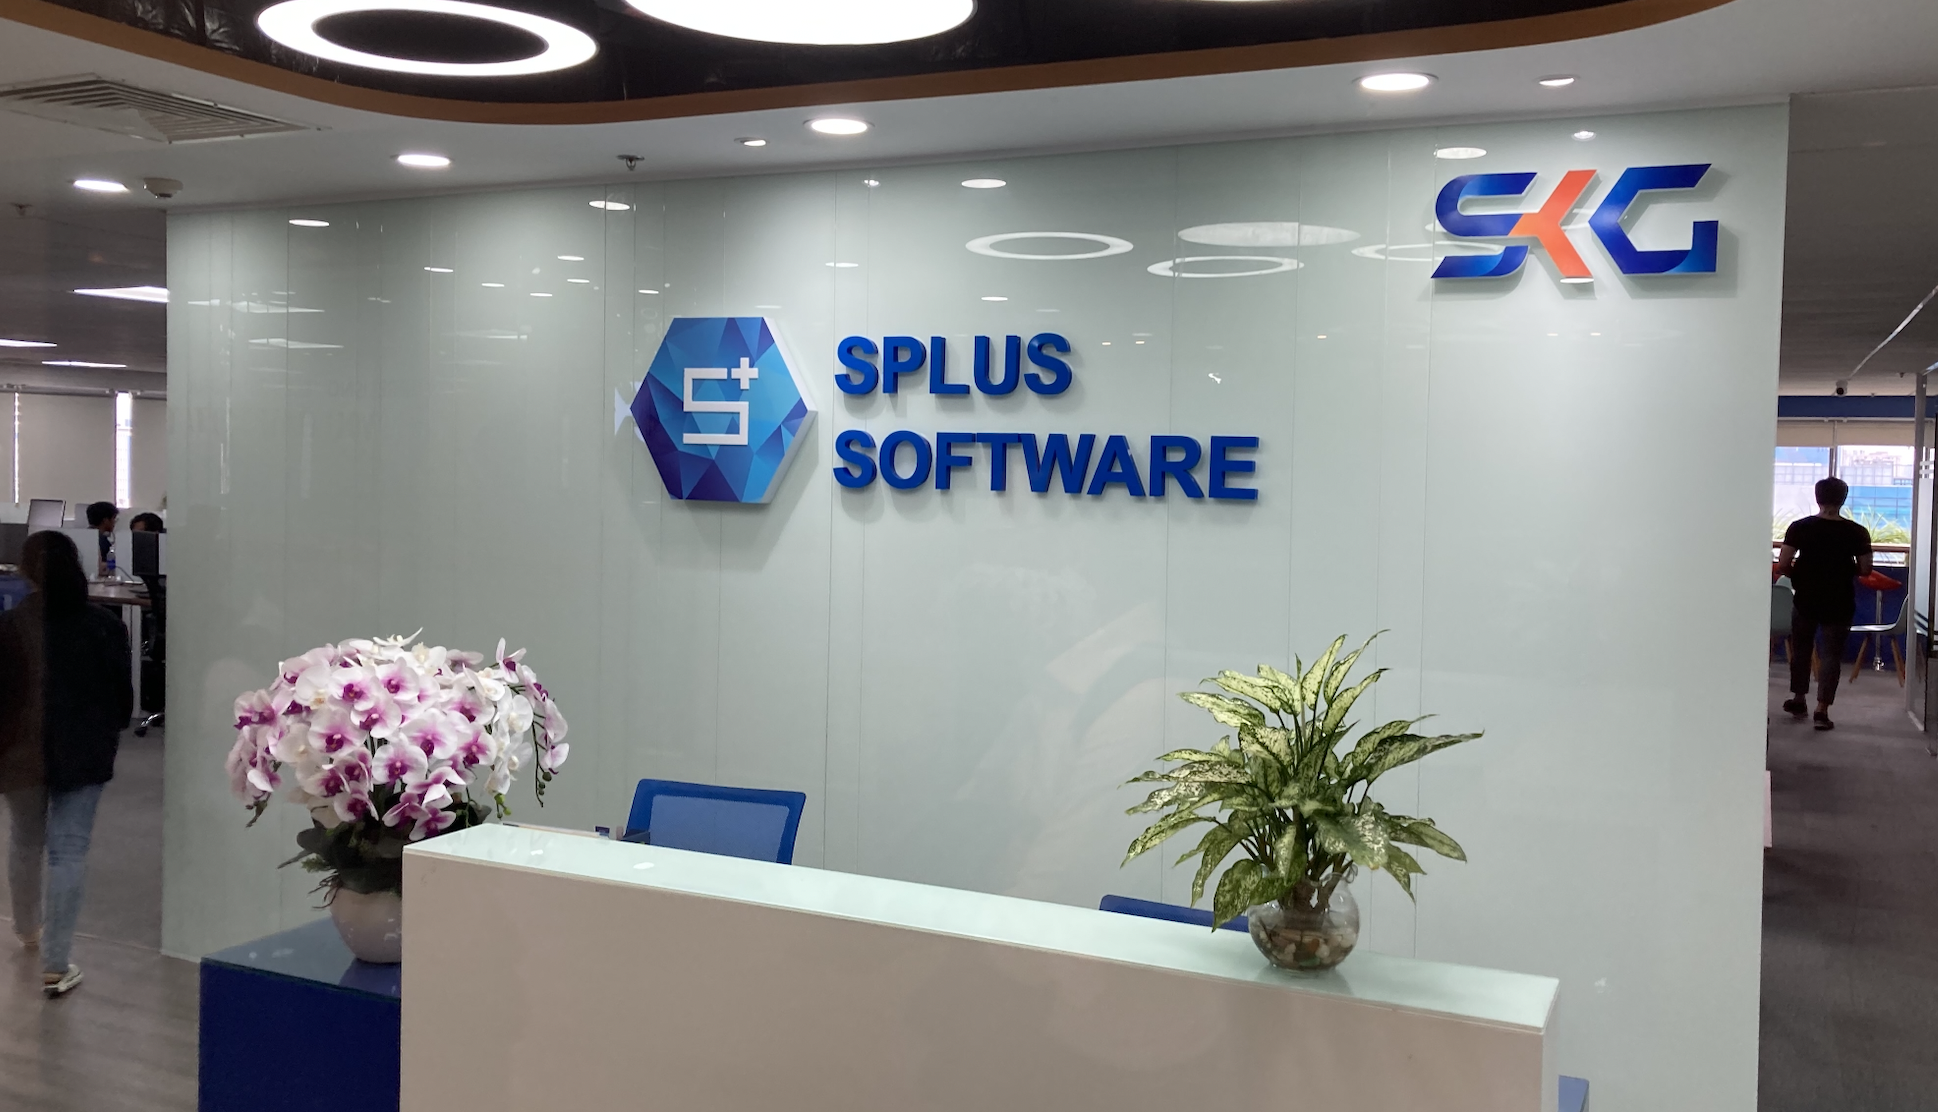 Splus Softwareのオフィスイメージ画像